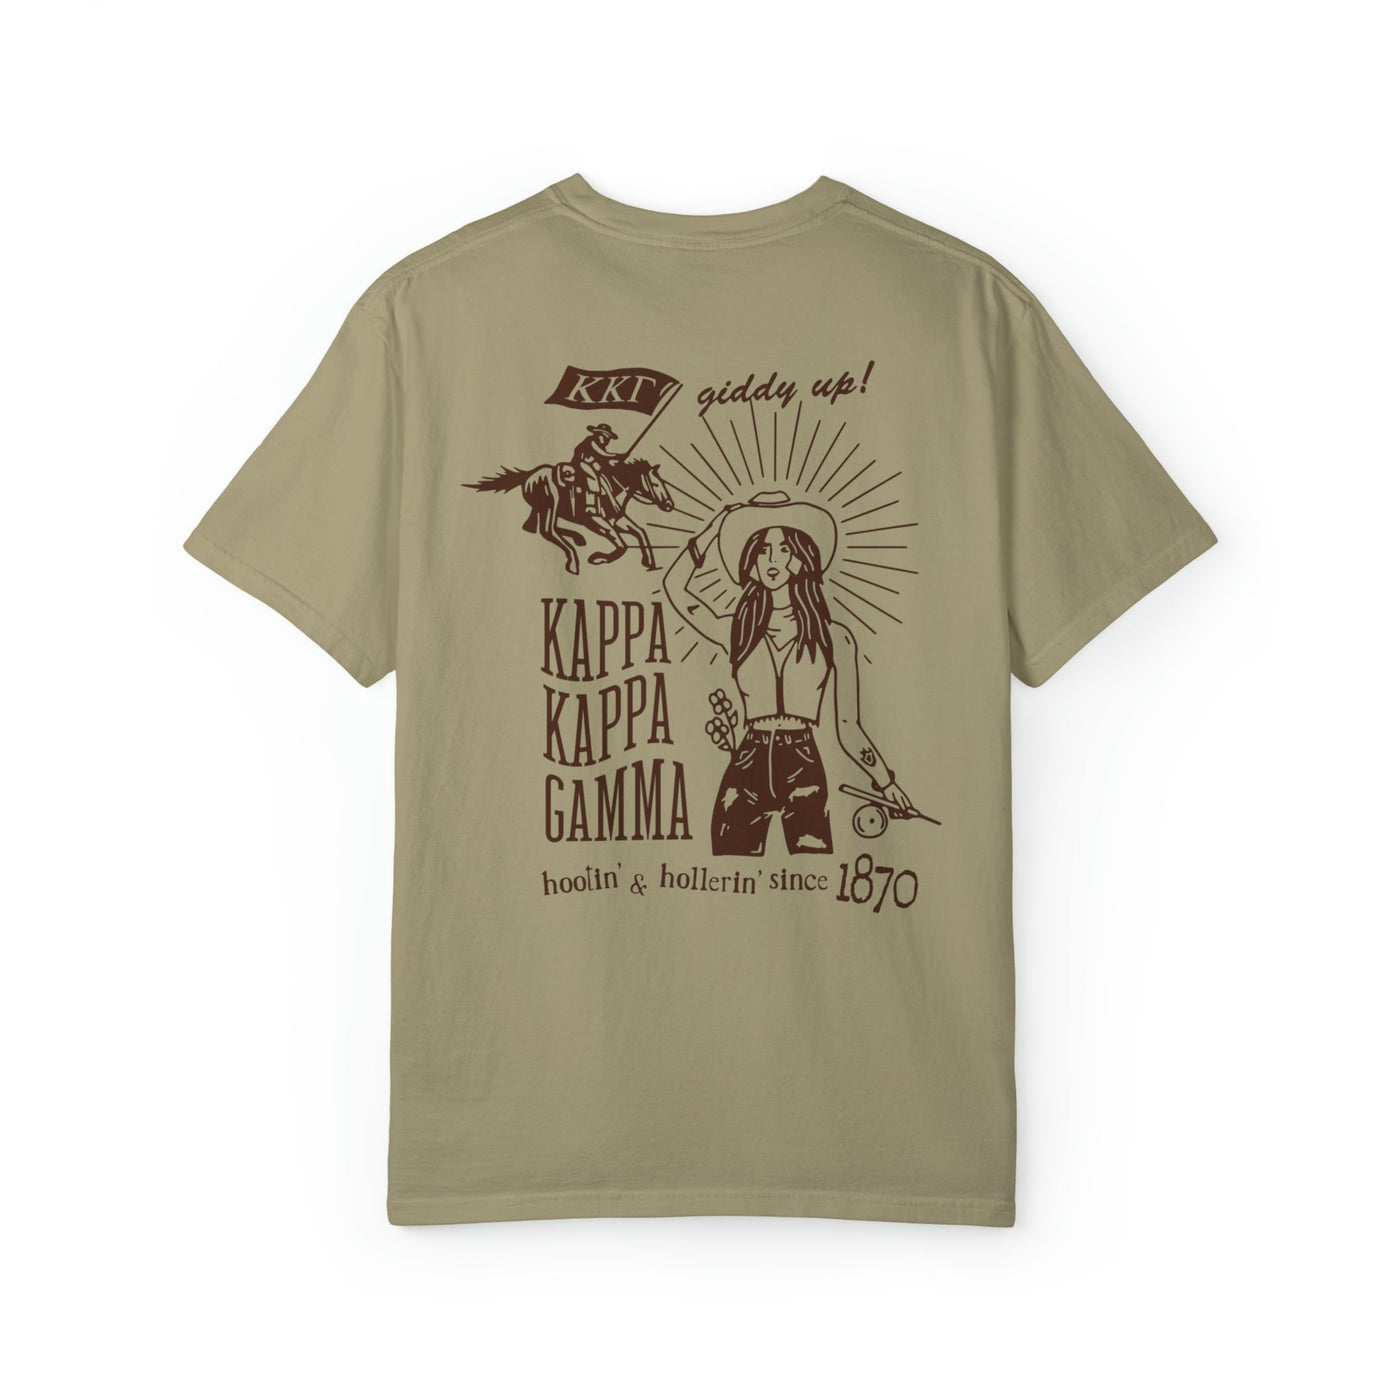 Kappa Kappa Gamma Country Western Sorority T-shirt